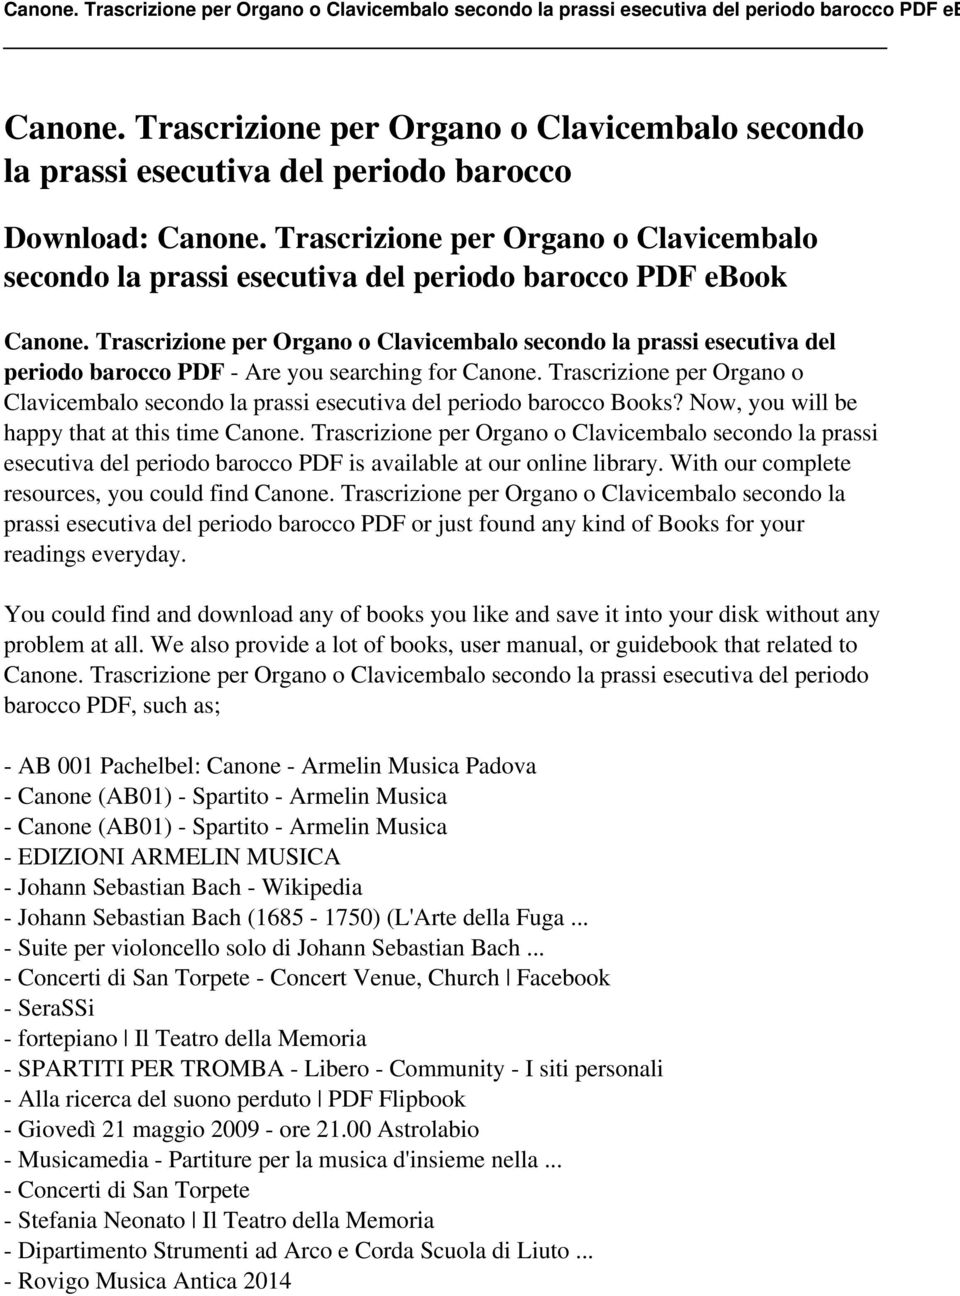 Trascrizione per Organo o Clavicembalo secondo la prassi esecutiva del periodo barocco PDF - Are you searching for Canone.